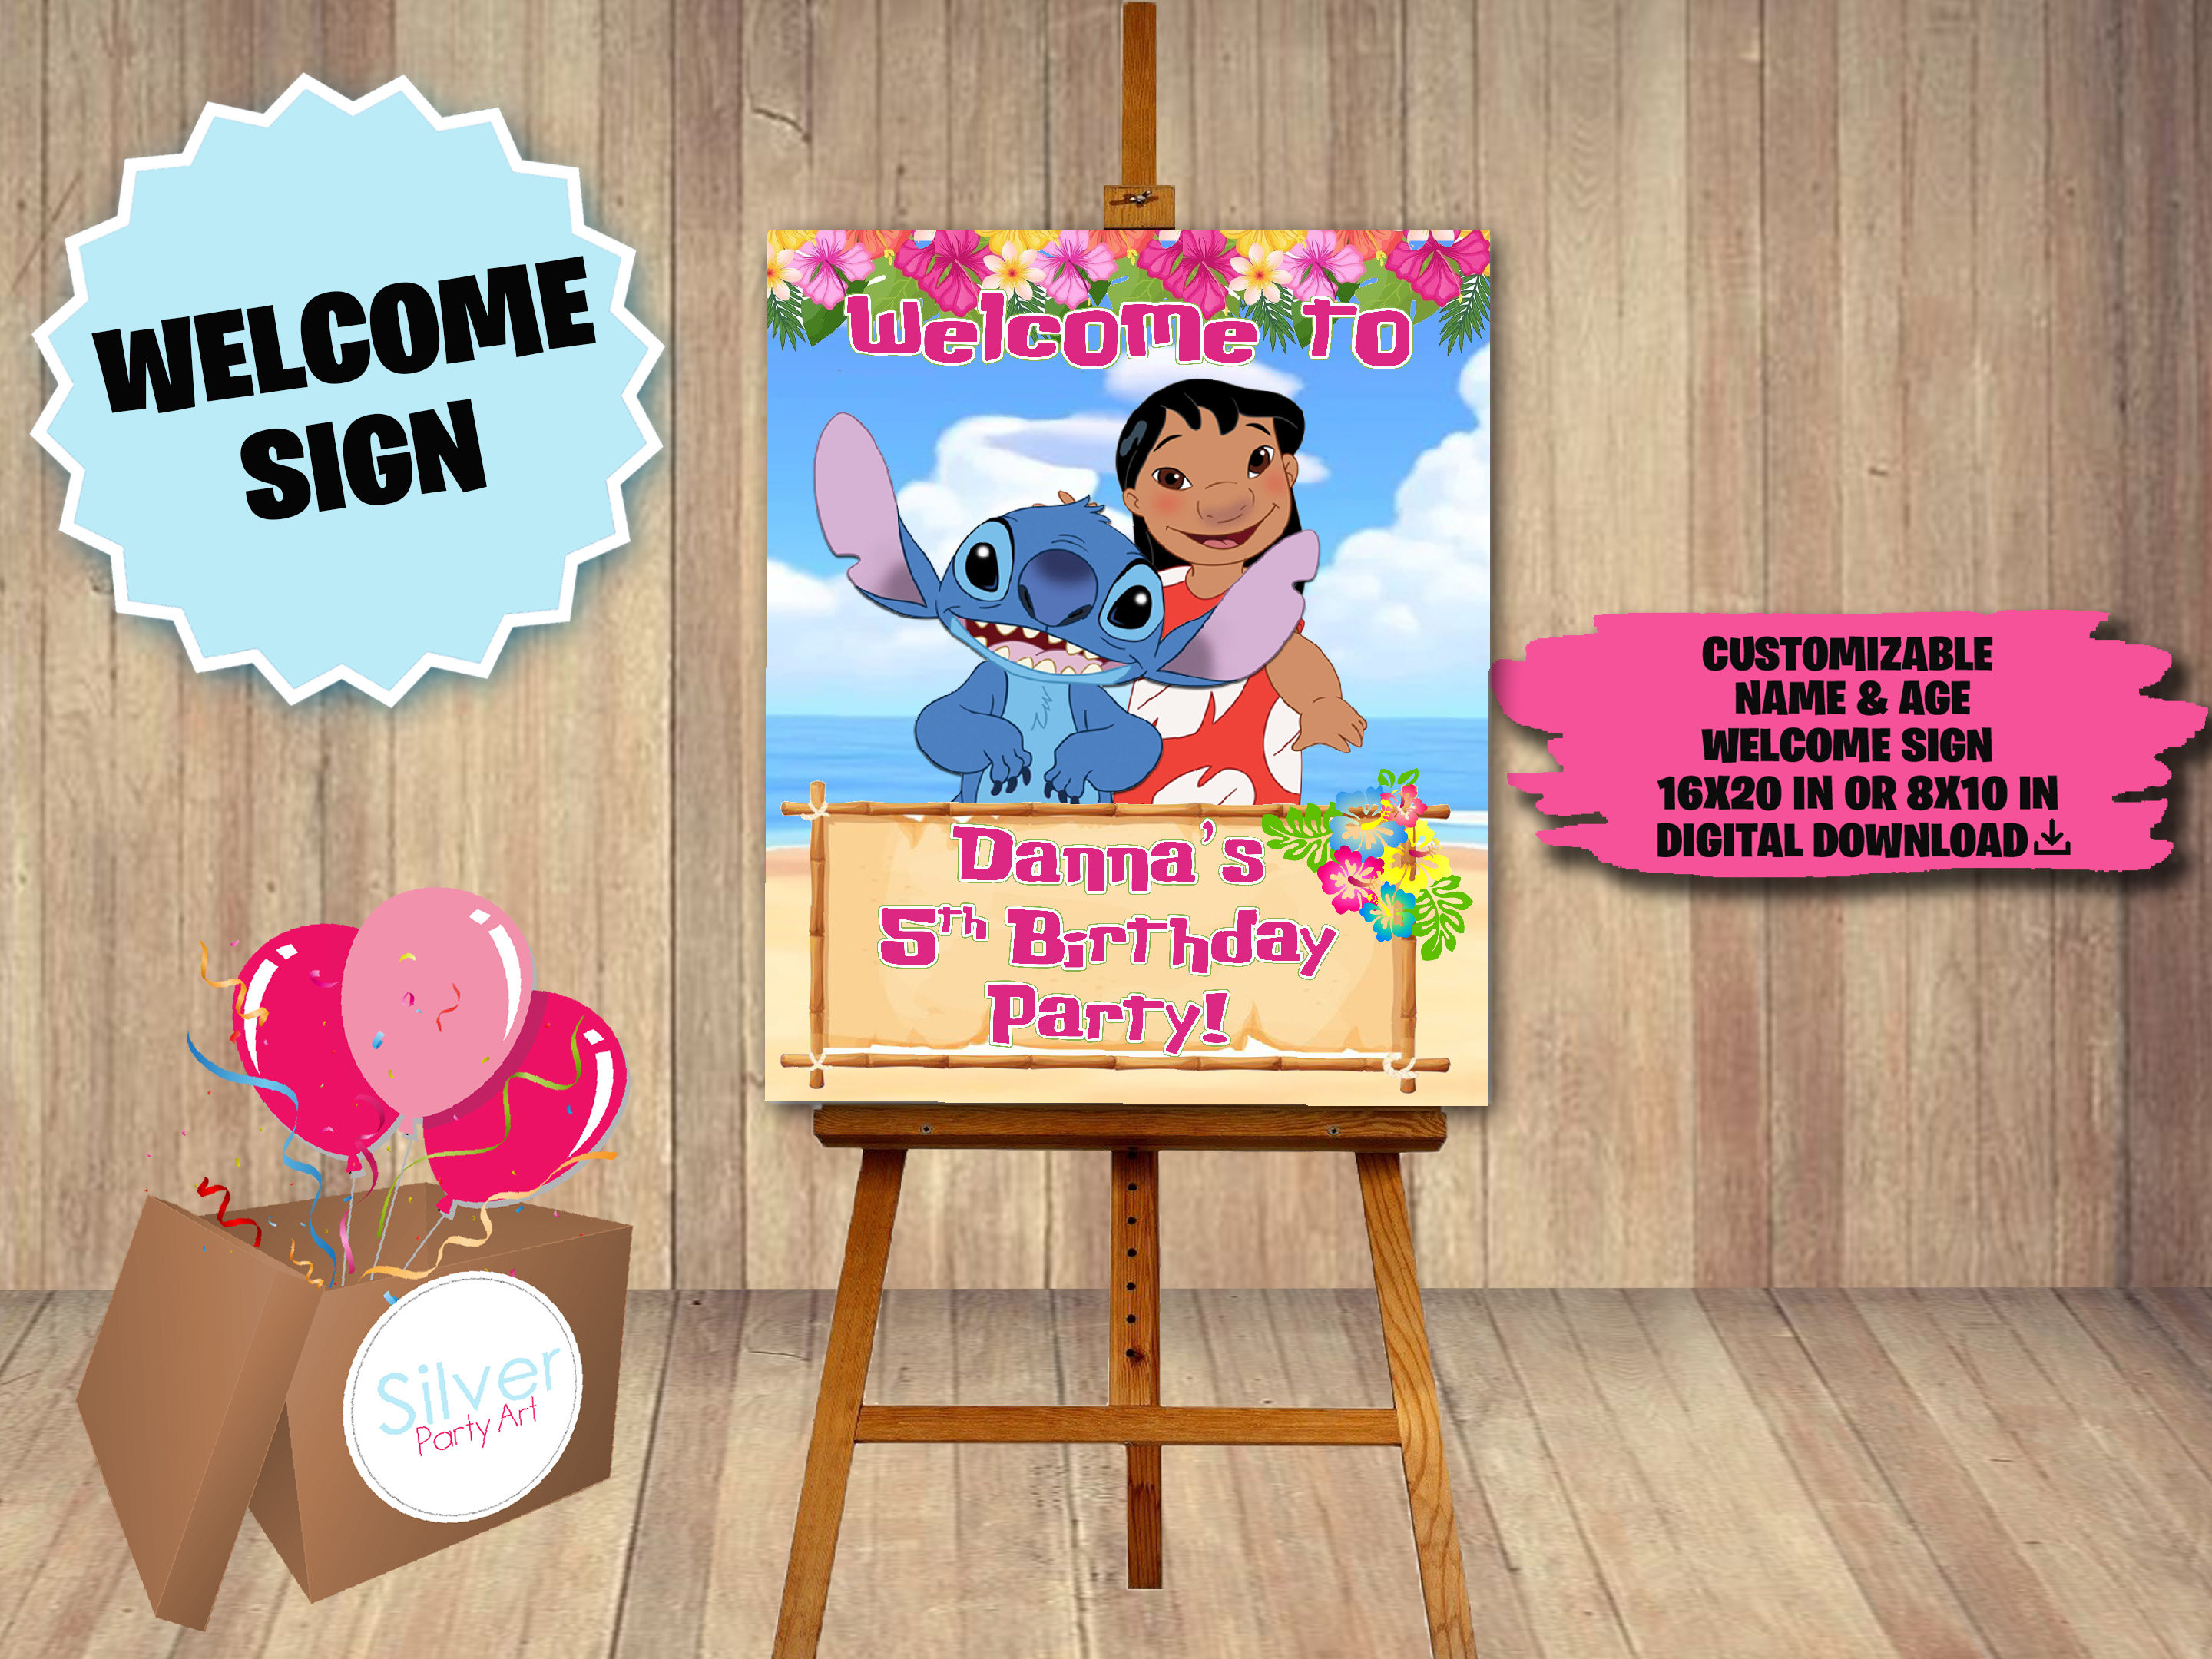 Lilo and Stitch Invitation Lilo and Stitch Birthday Lilo and Stitch Invite  Lilo Invitation Lilo Birthday Invitation Lilo Party Invitation